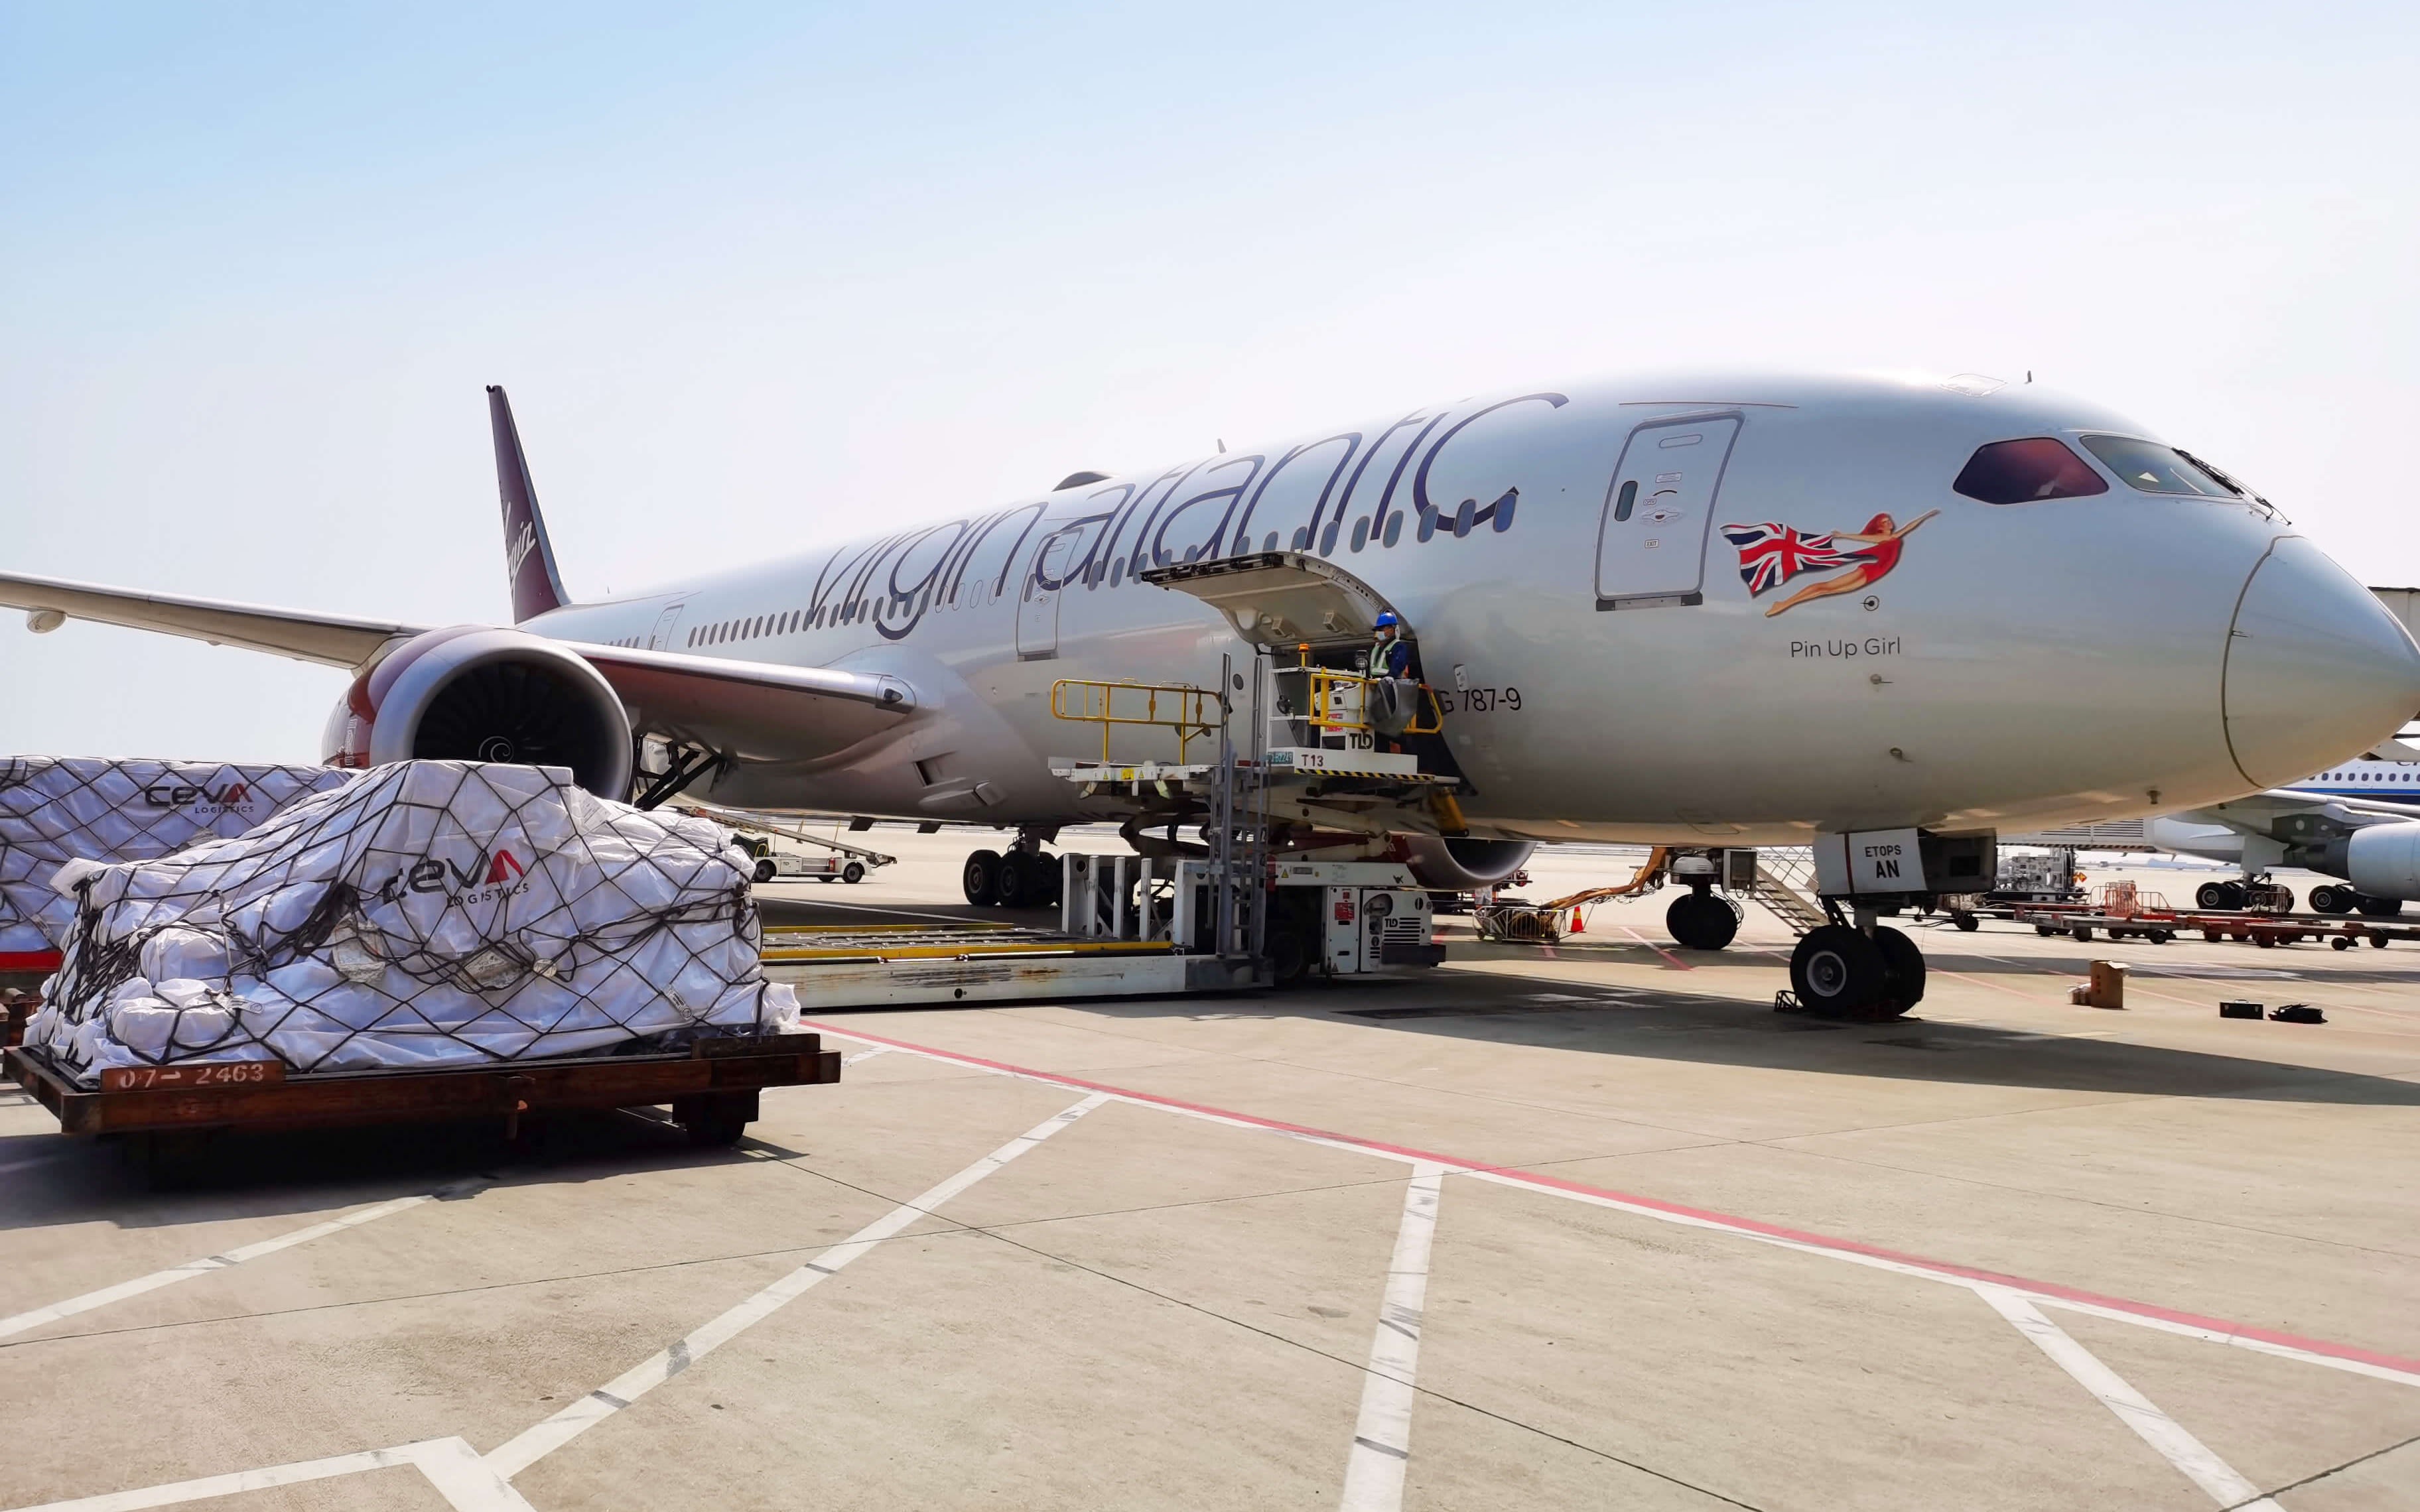 Cargo is loaded onto a Virgin Atlantic plane